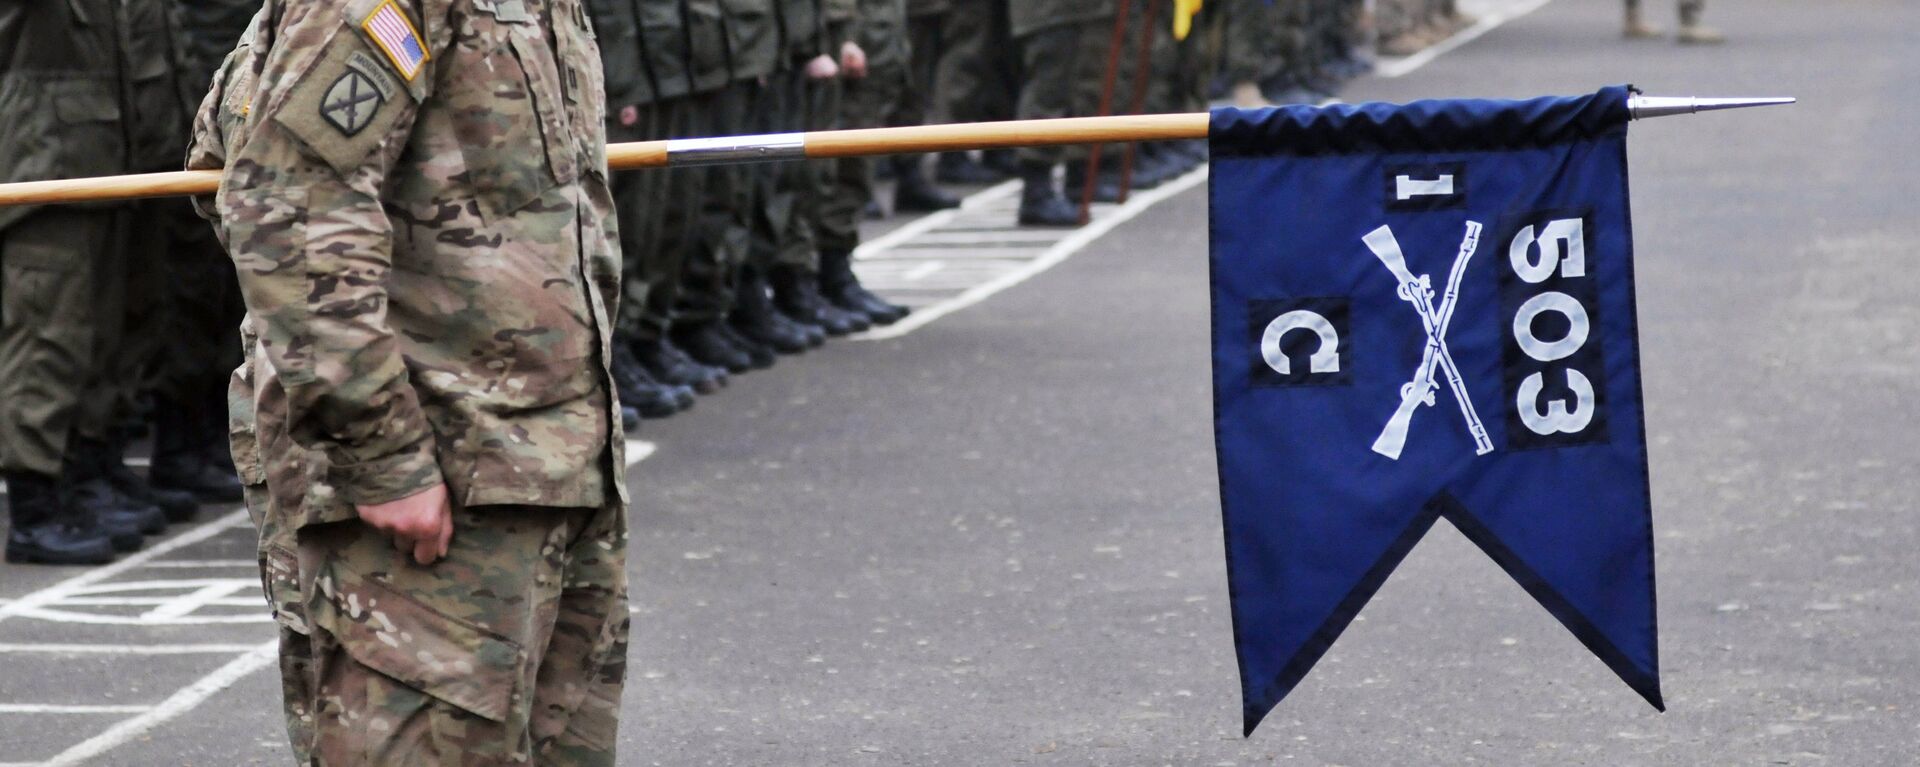 'Korkusuz Gardiyan' adlı tatbikat kapsamında Amerikan askerleri, Lviv'de Ukrayna Ulusal Tugayı'na bağlı birlikleri eğitiyor. - Sputnik Türkiye, 1920, 07.08.2022